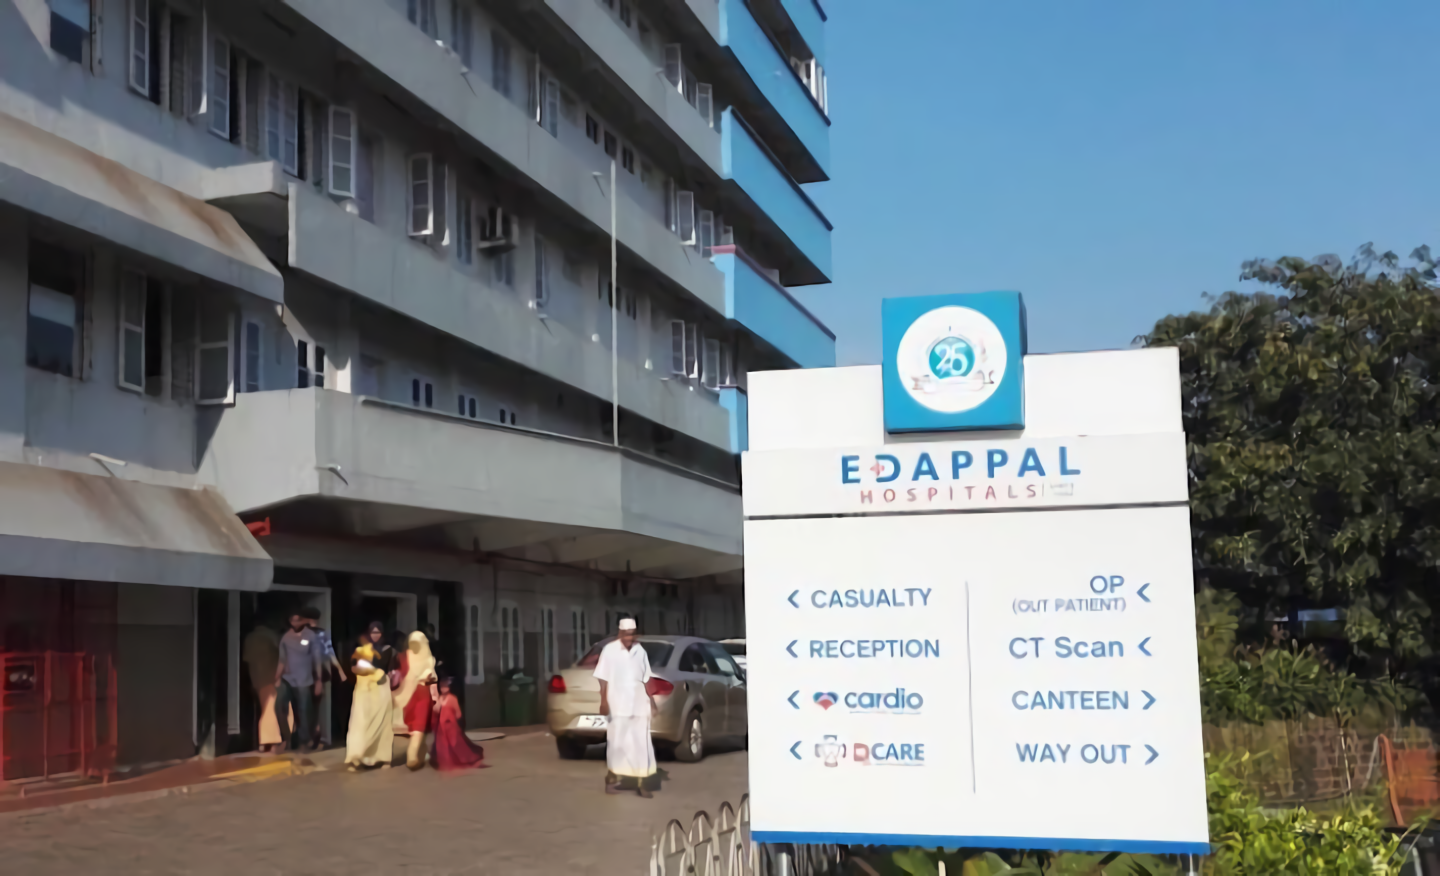 Edappal Hospital Pvt Ltd